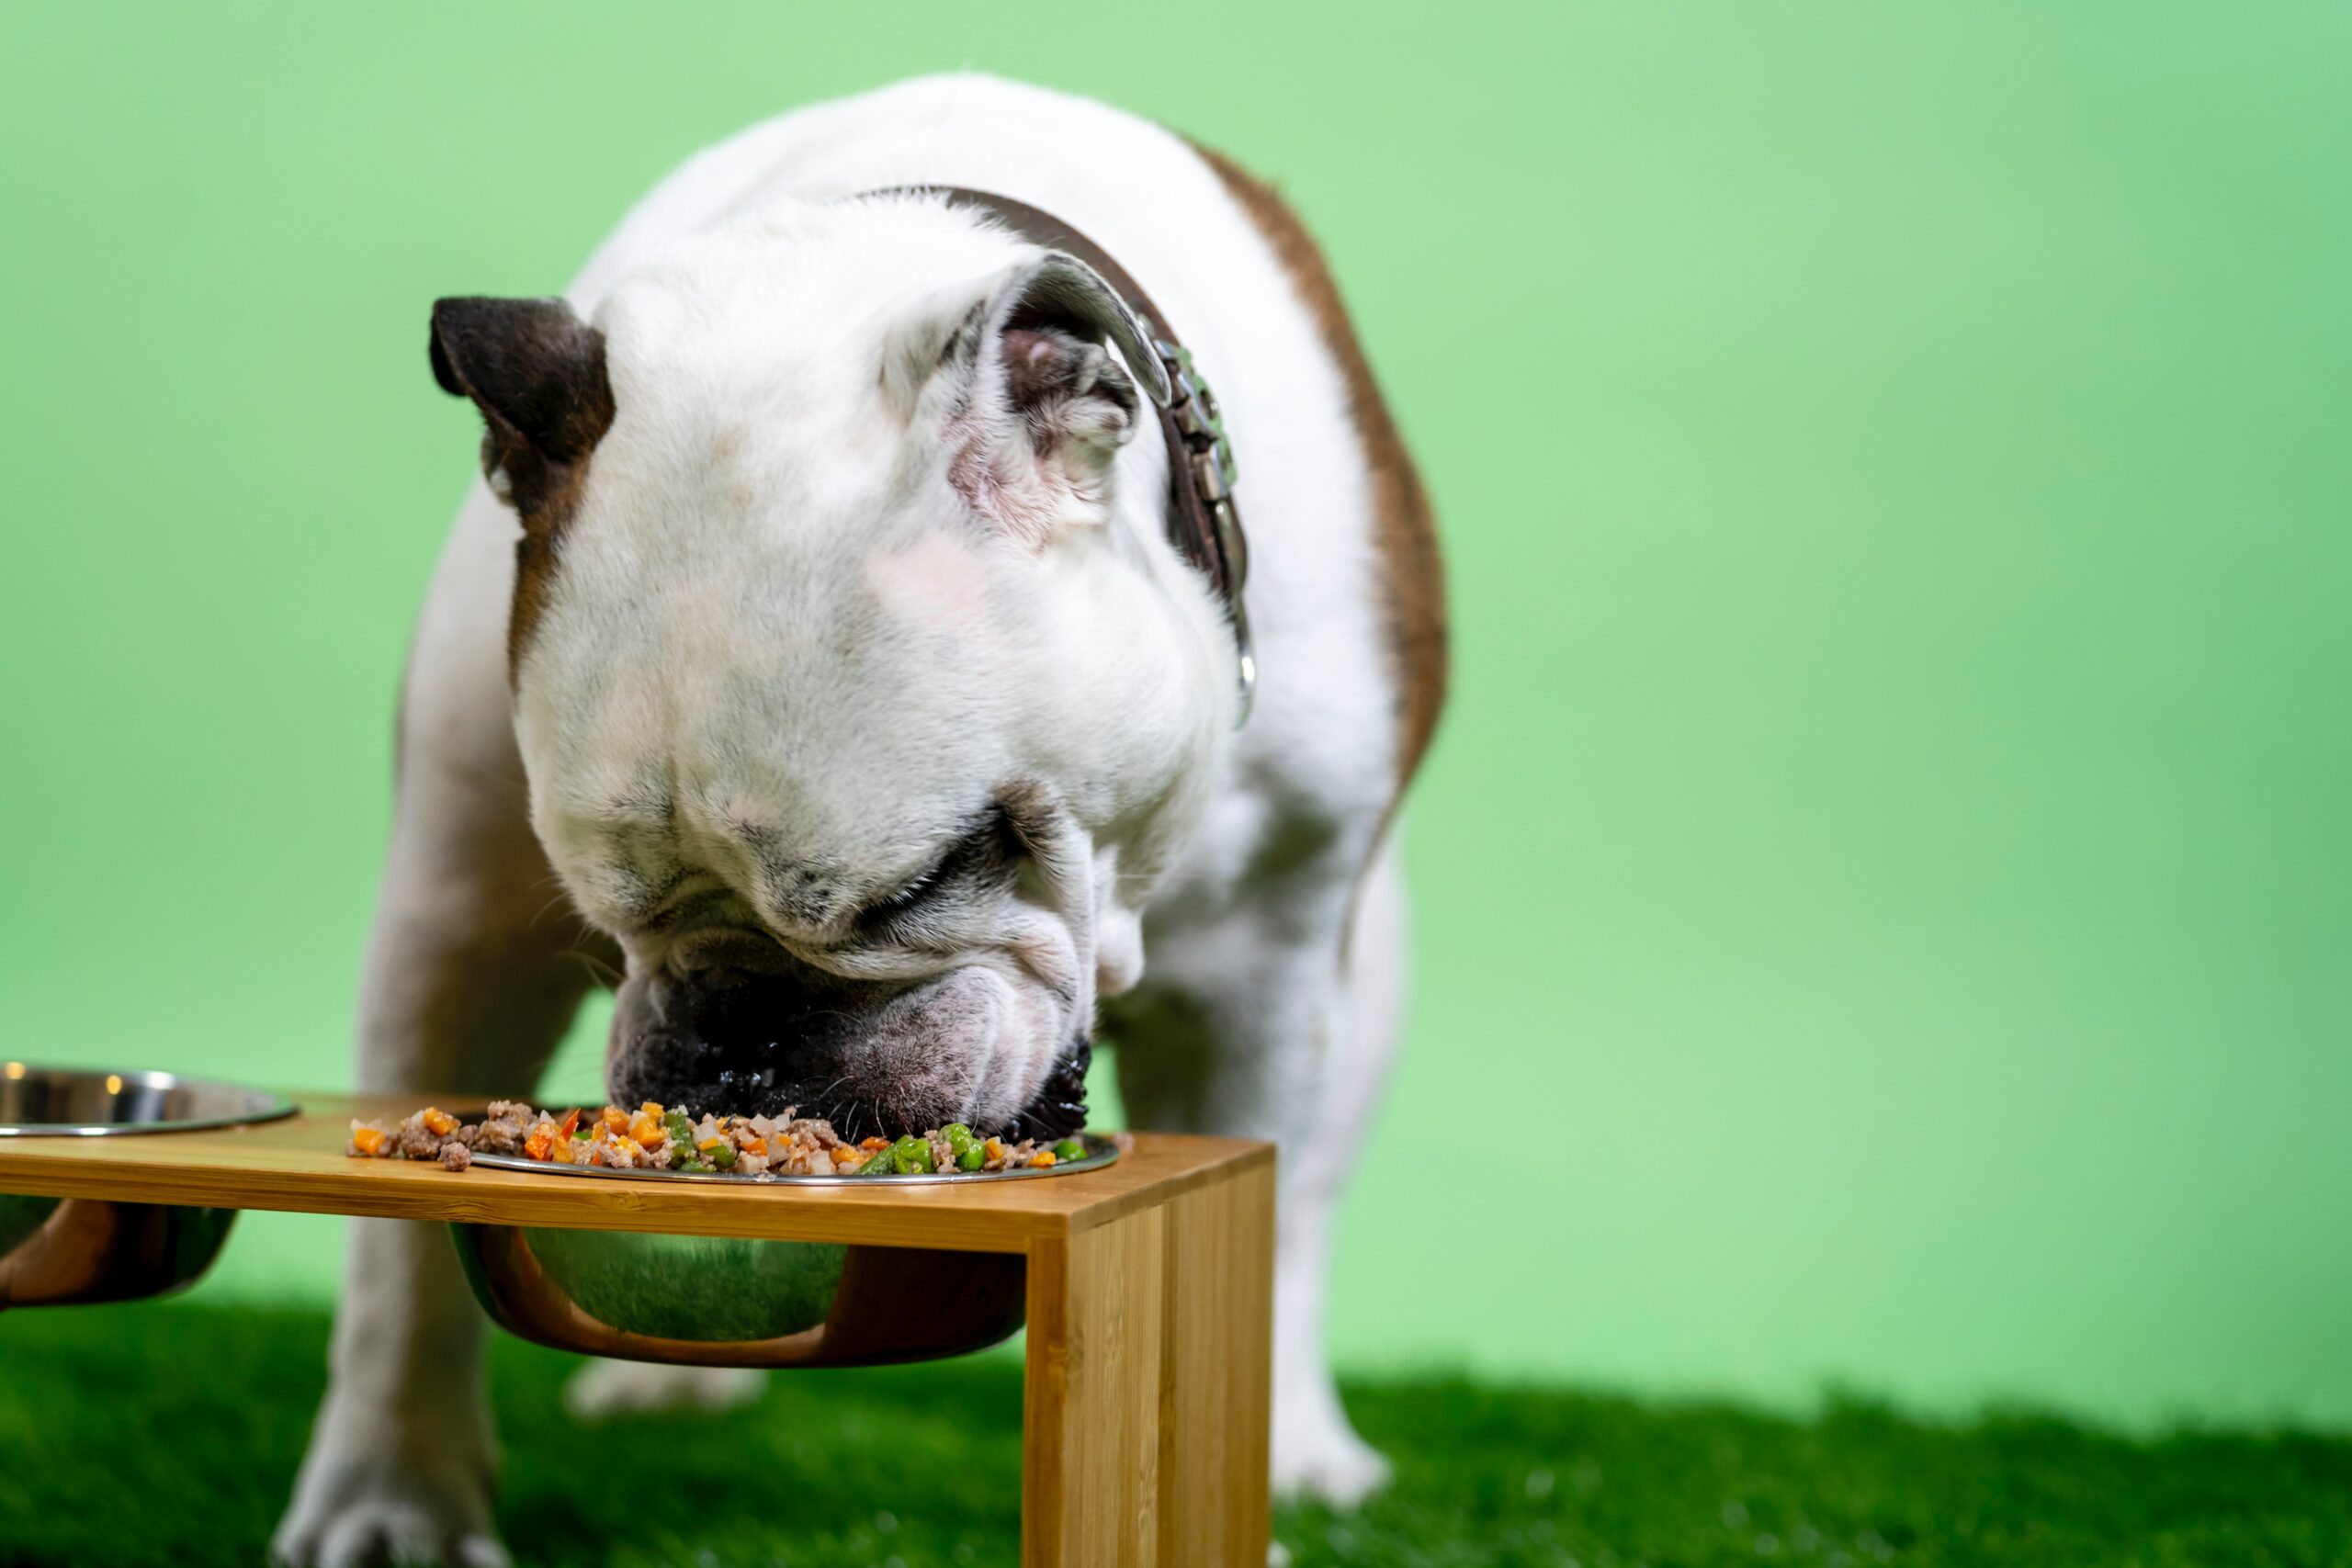 Restos de comida e alimentos crus podem beneficiar o estômago dos cães